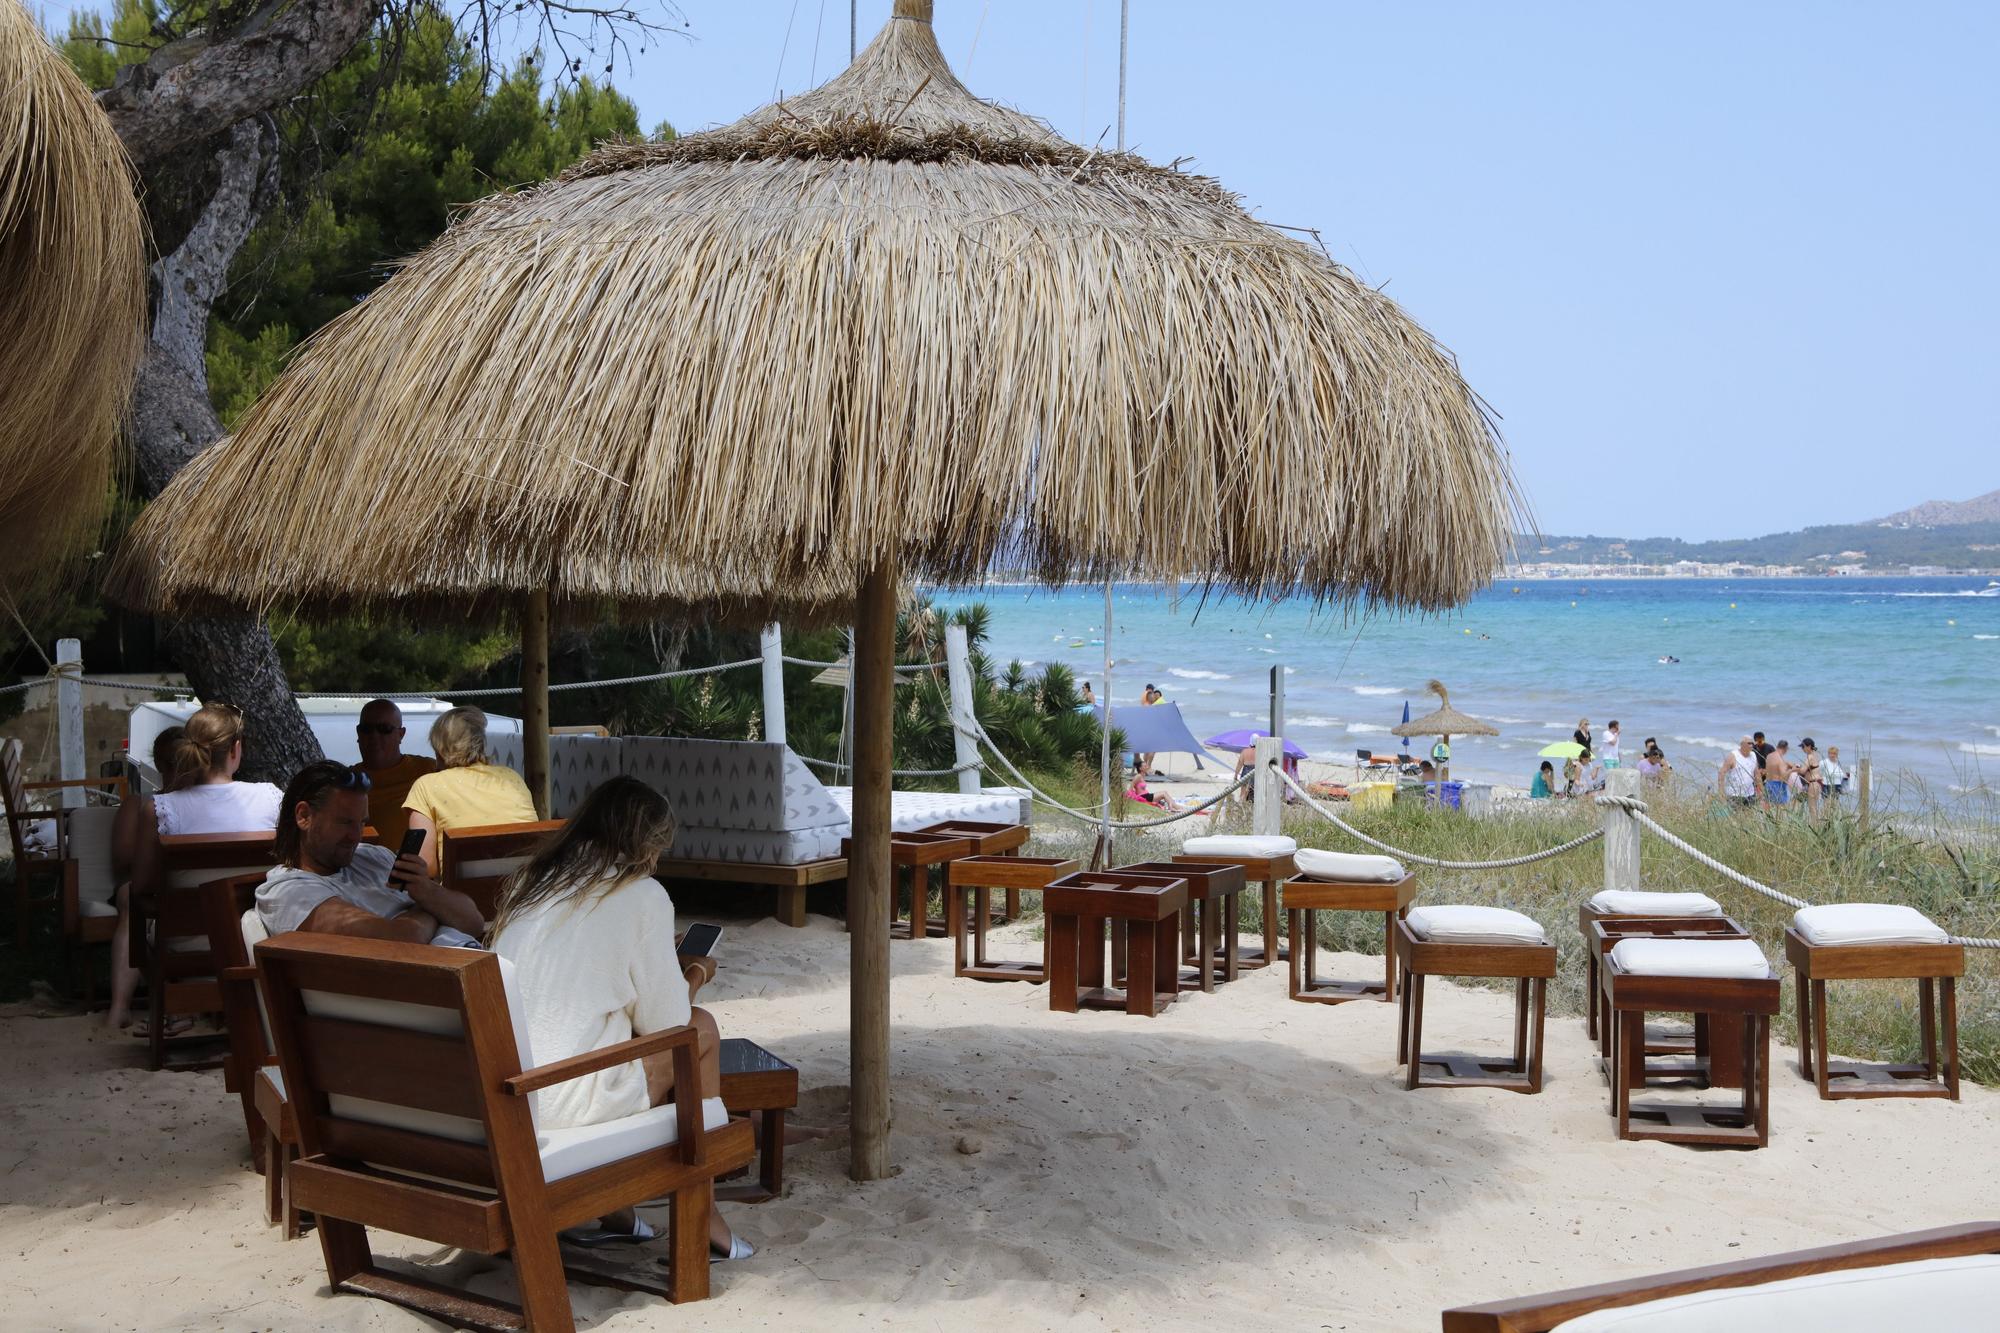 Gerade eröffnet: Das ist der neueste Beachclub an der Playa de Muro